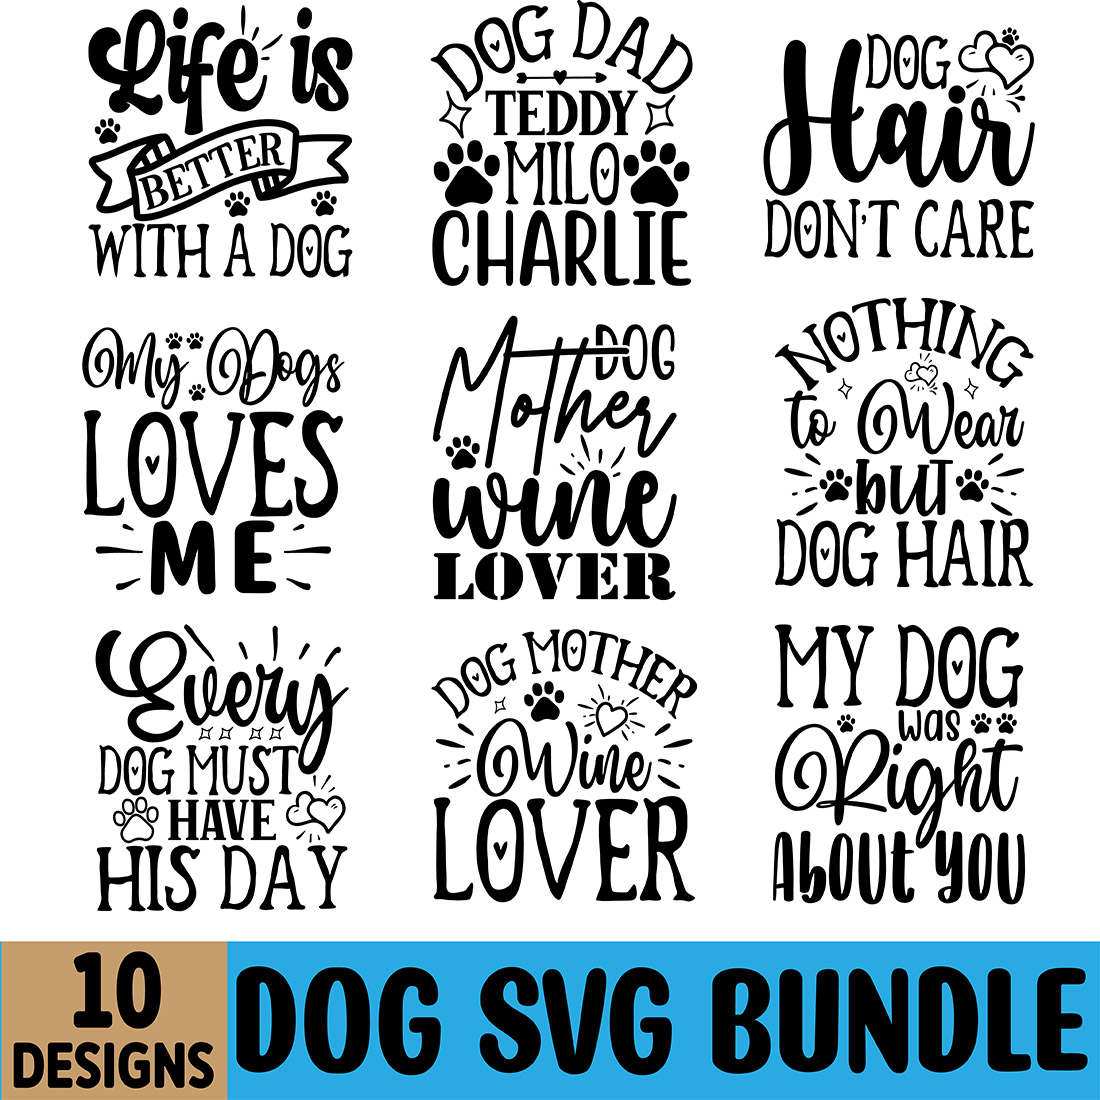 Dog SVG Design Bundle preview image.